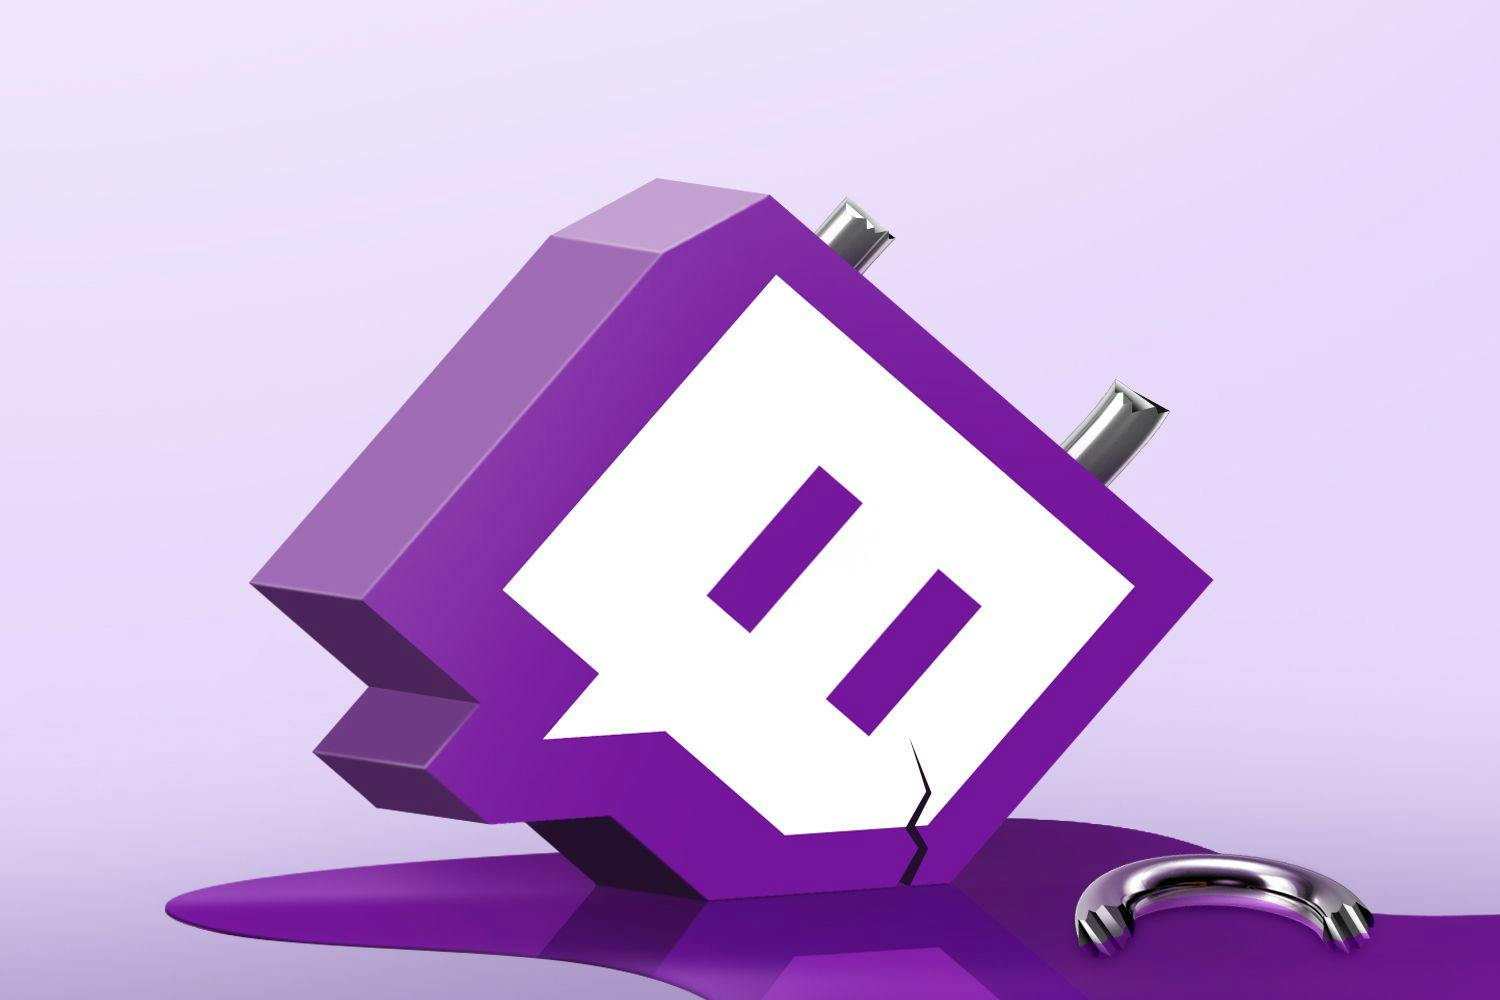 The Twitch logo as a broken lock leaking purple fluid